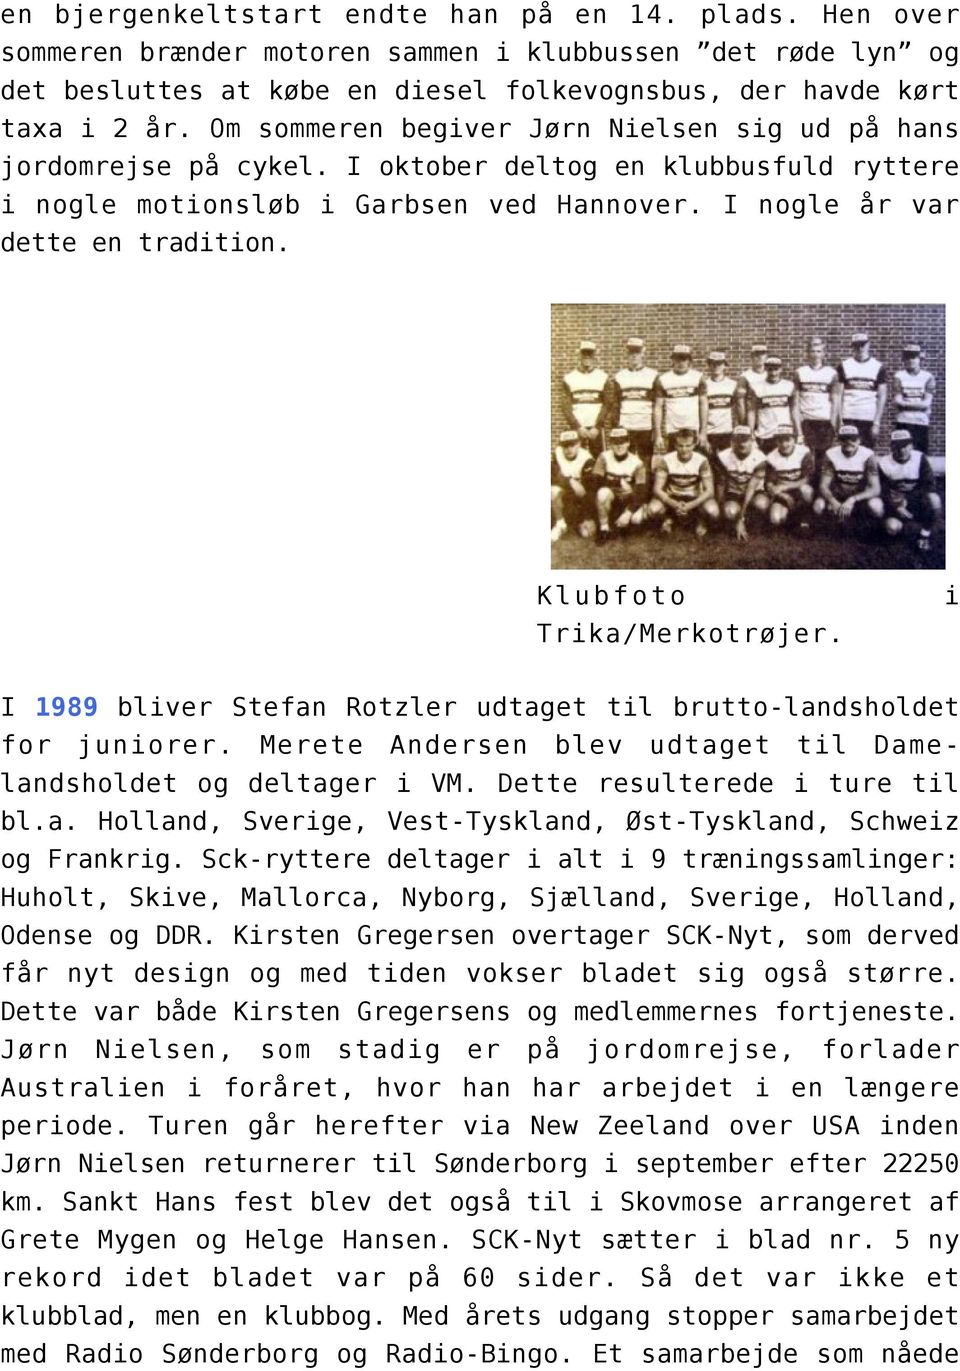 Klubfoto i Trika/Merkotrøjer. I 1989 bliver Stefan Rotzler udtaget til brutto-landsholdet for juniorer. Merete Andersen blev udtaget til Damelandsholdet og deltager i VM.